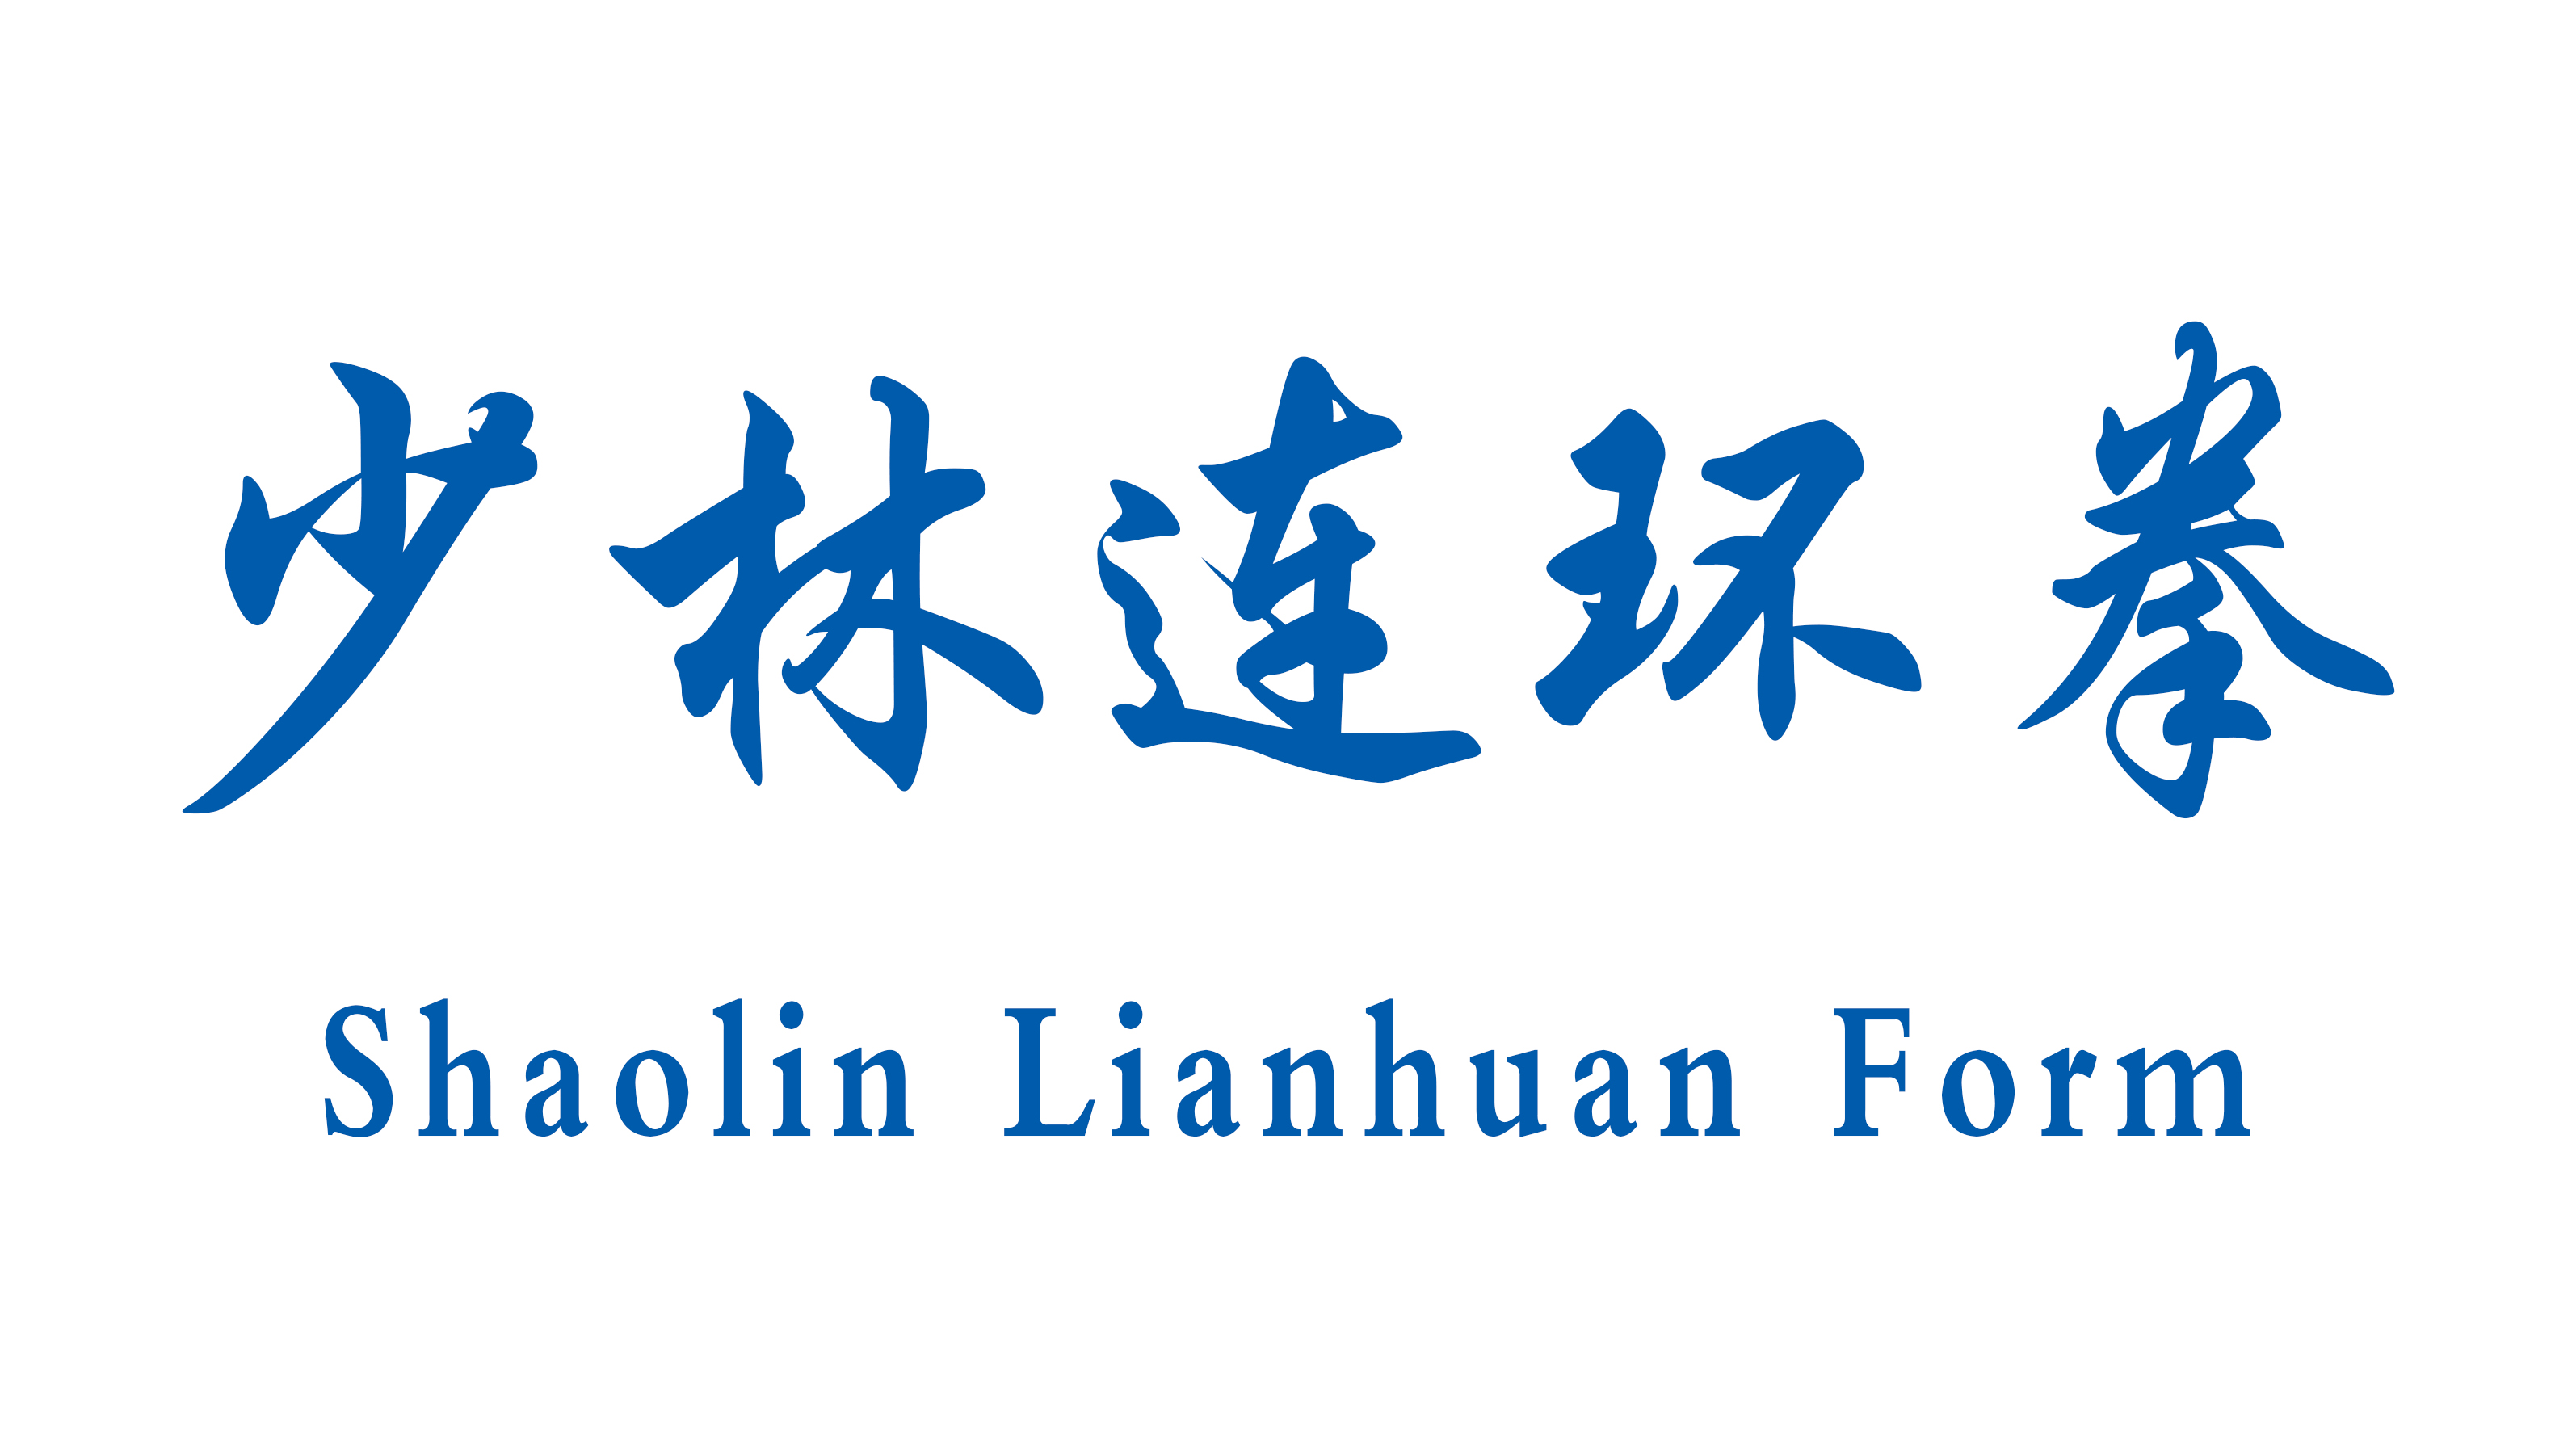 Shaolin Lianhuan Form